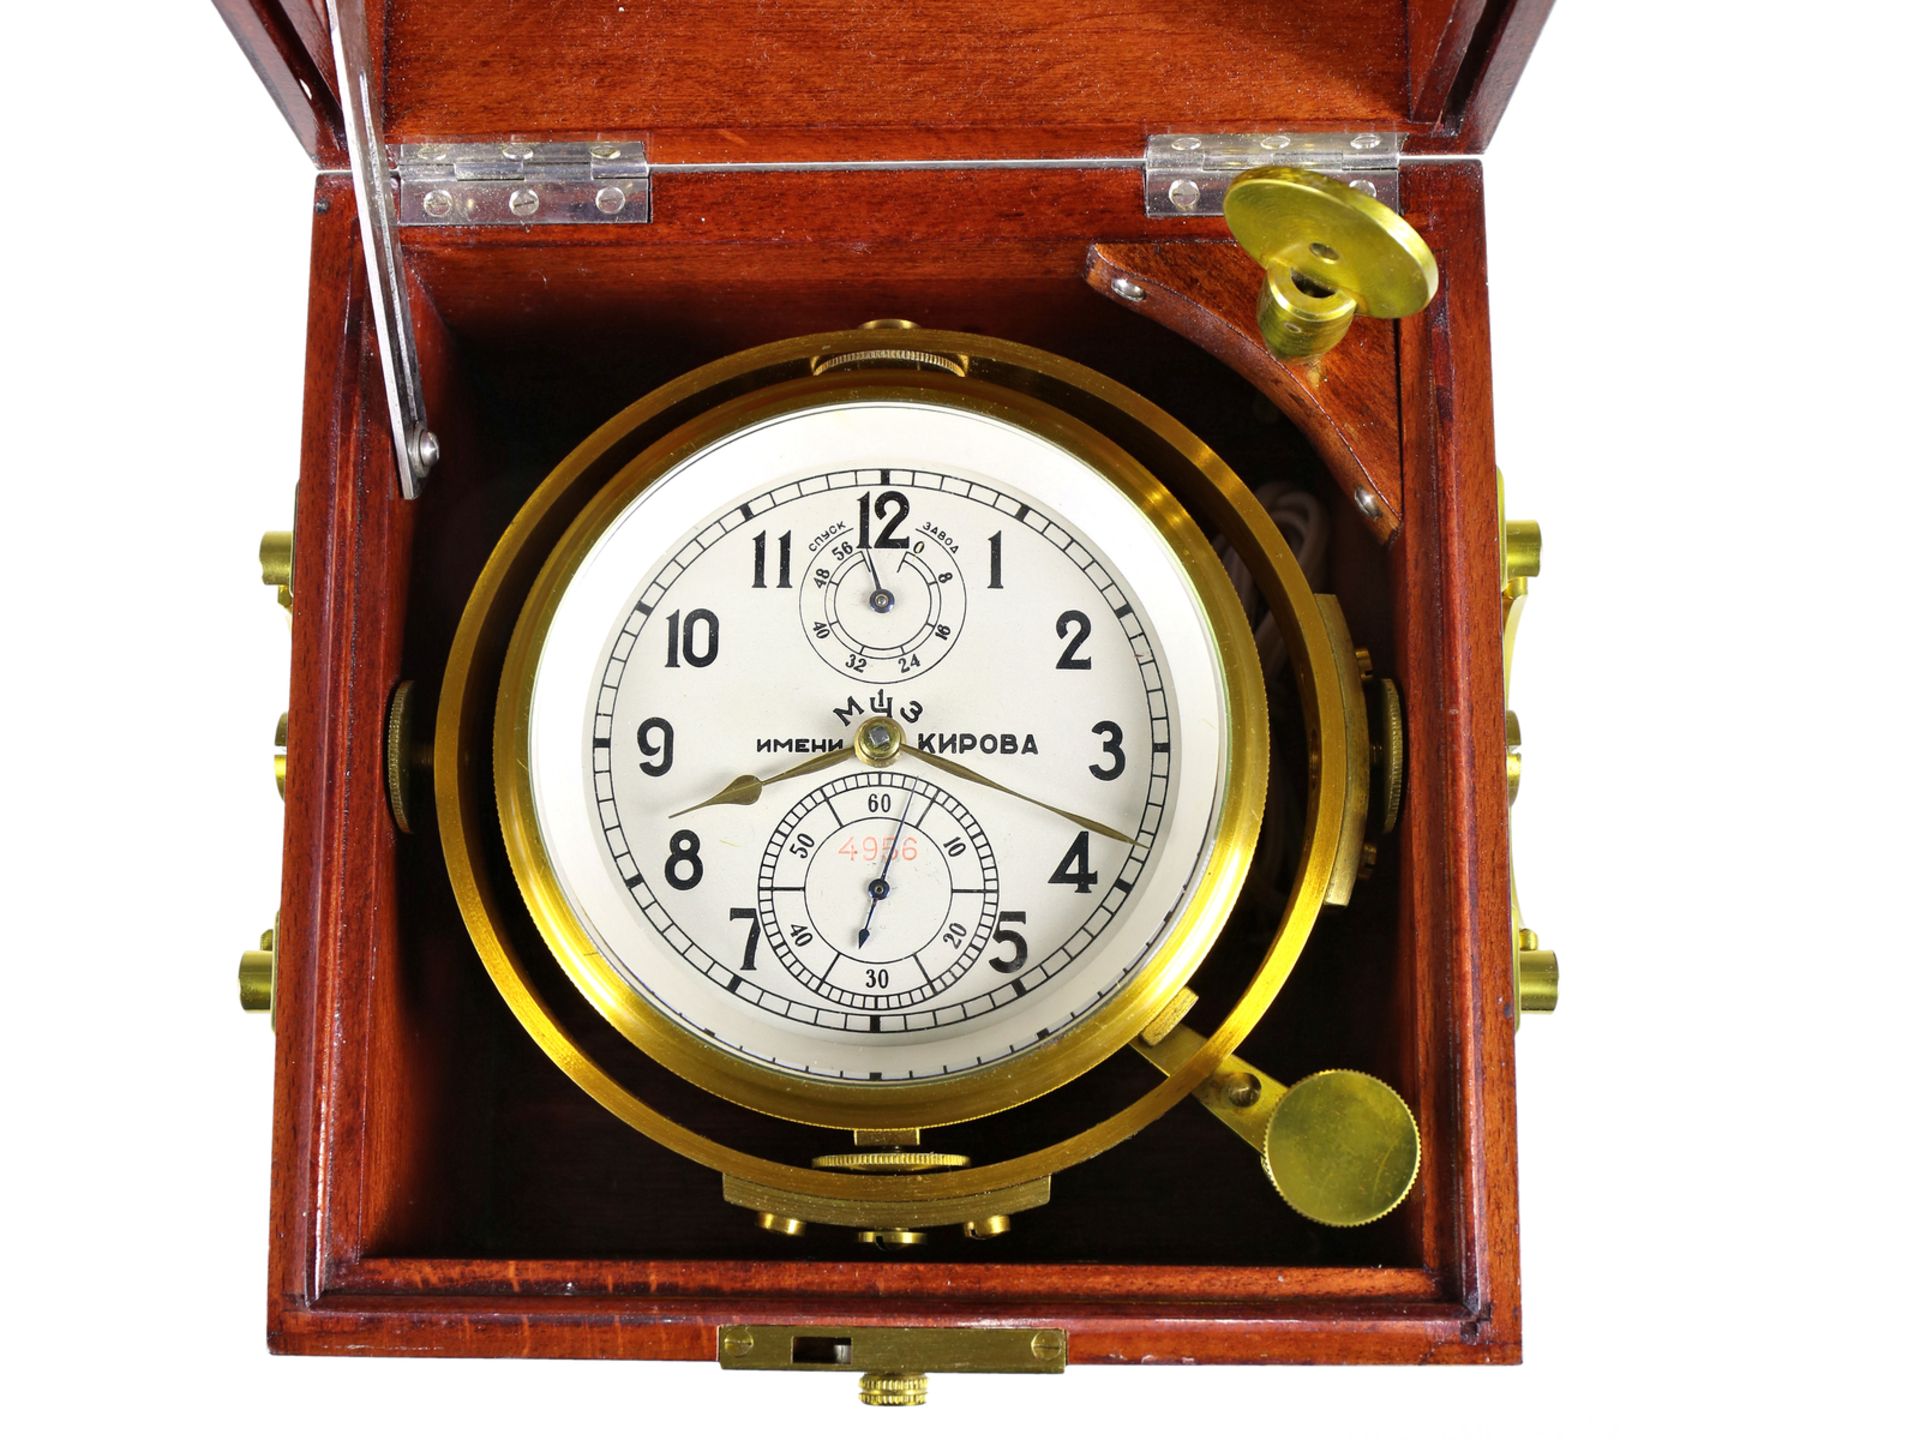 Marinechronometer: russisches Marinechronometer, seltener Originalzustand, Moskauer Uhrenfabrik Kiro